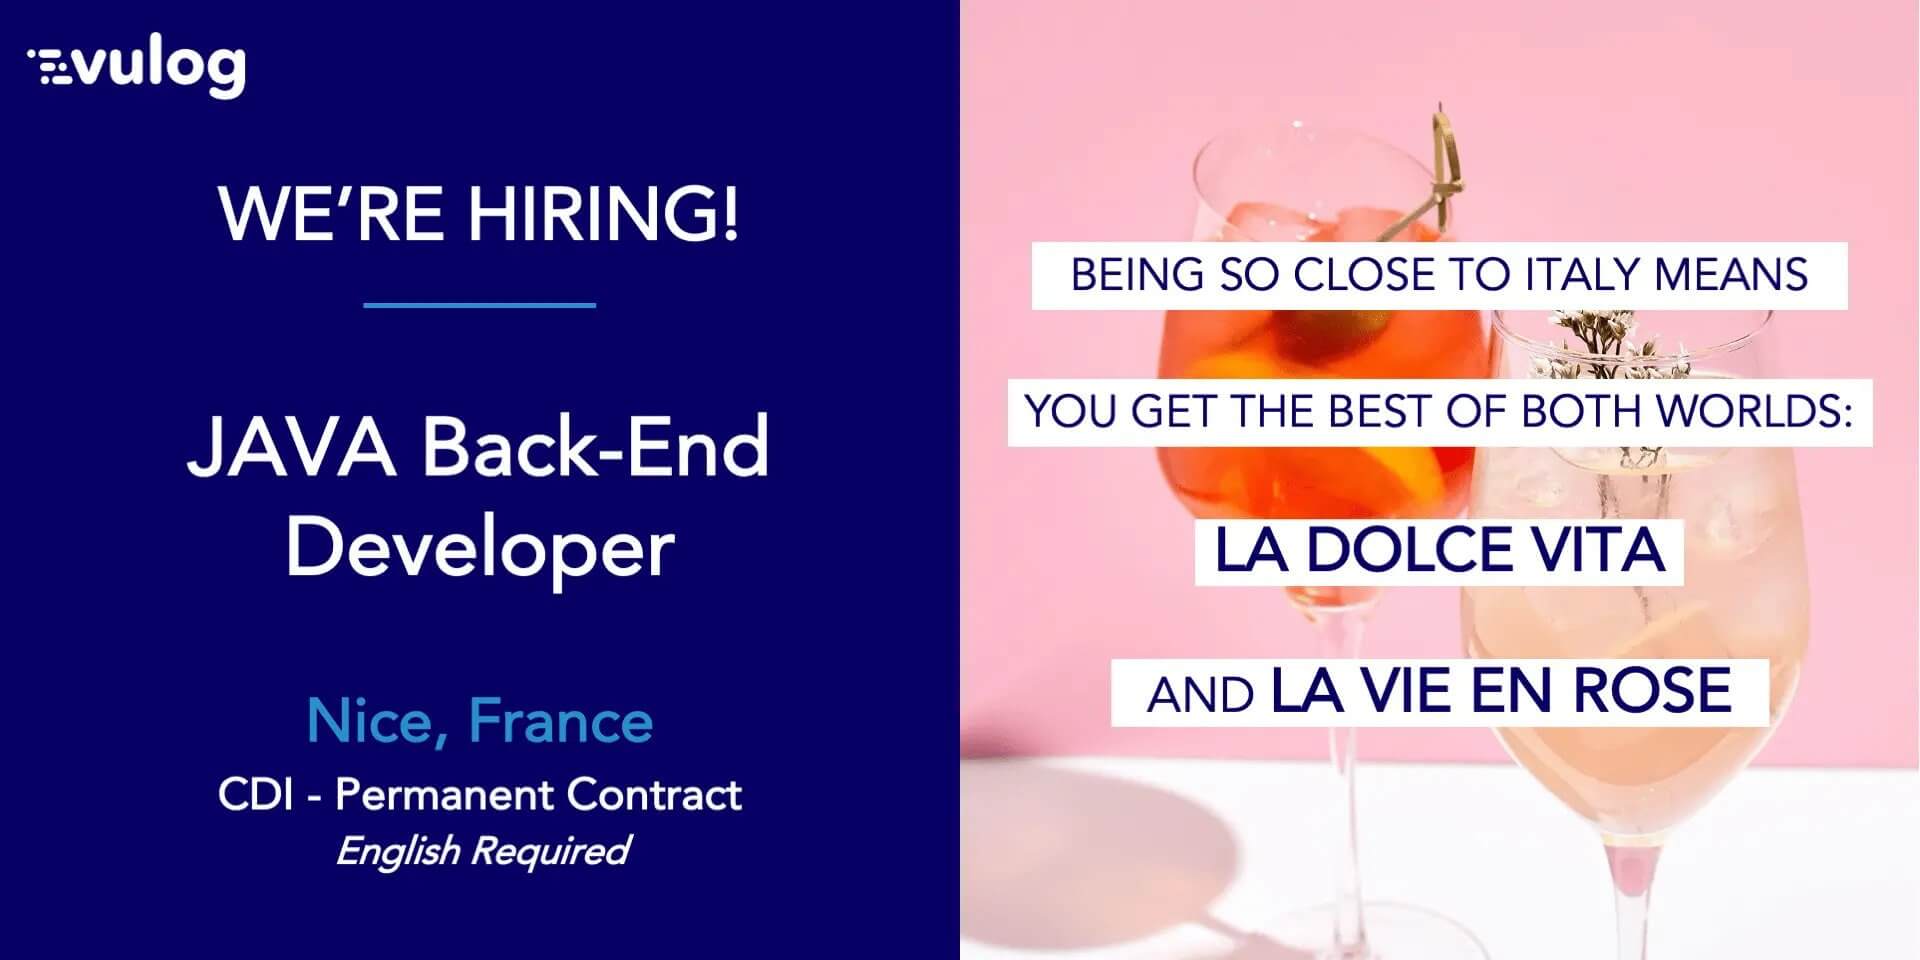 Vulog hiring JAVA Back-End Developer in Nice